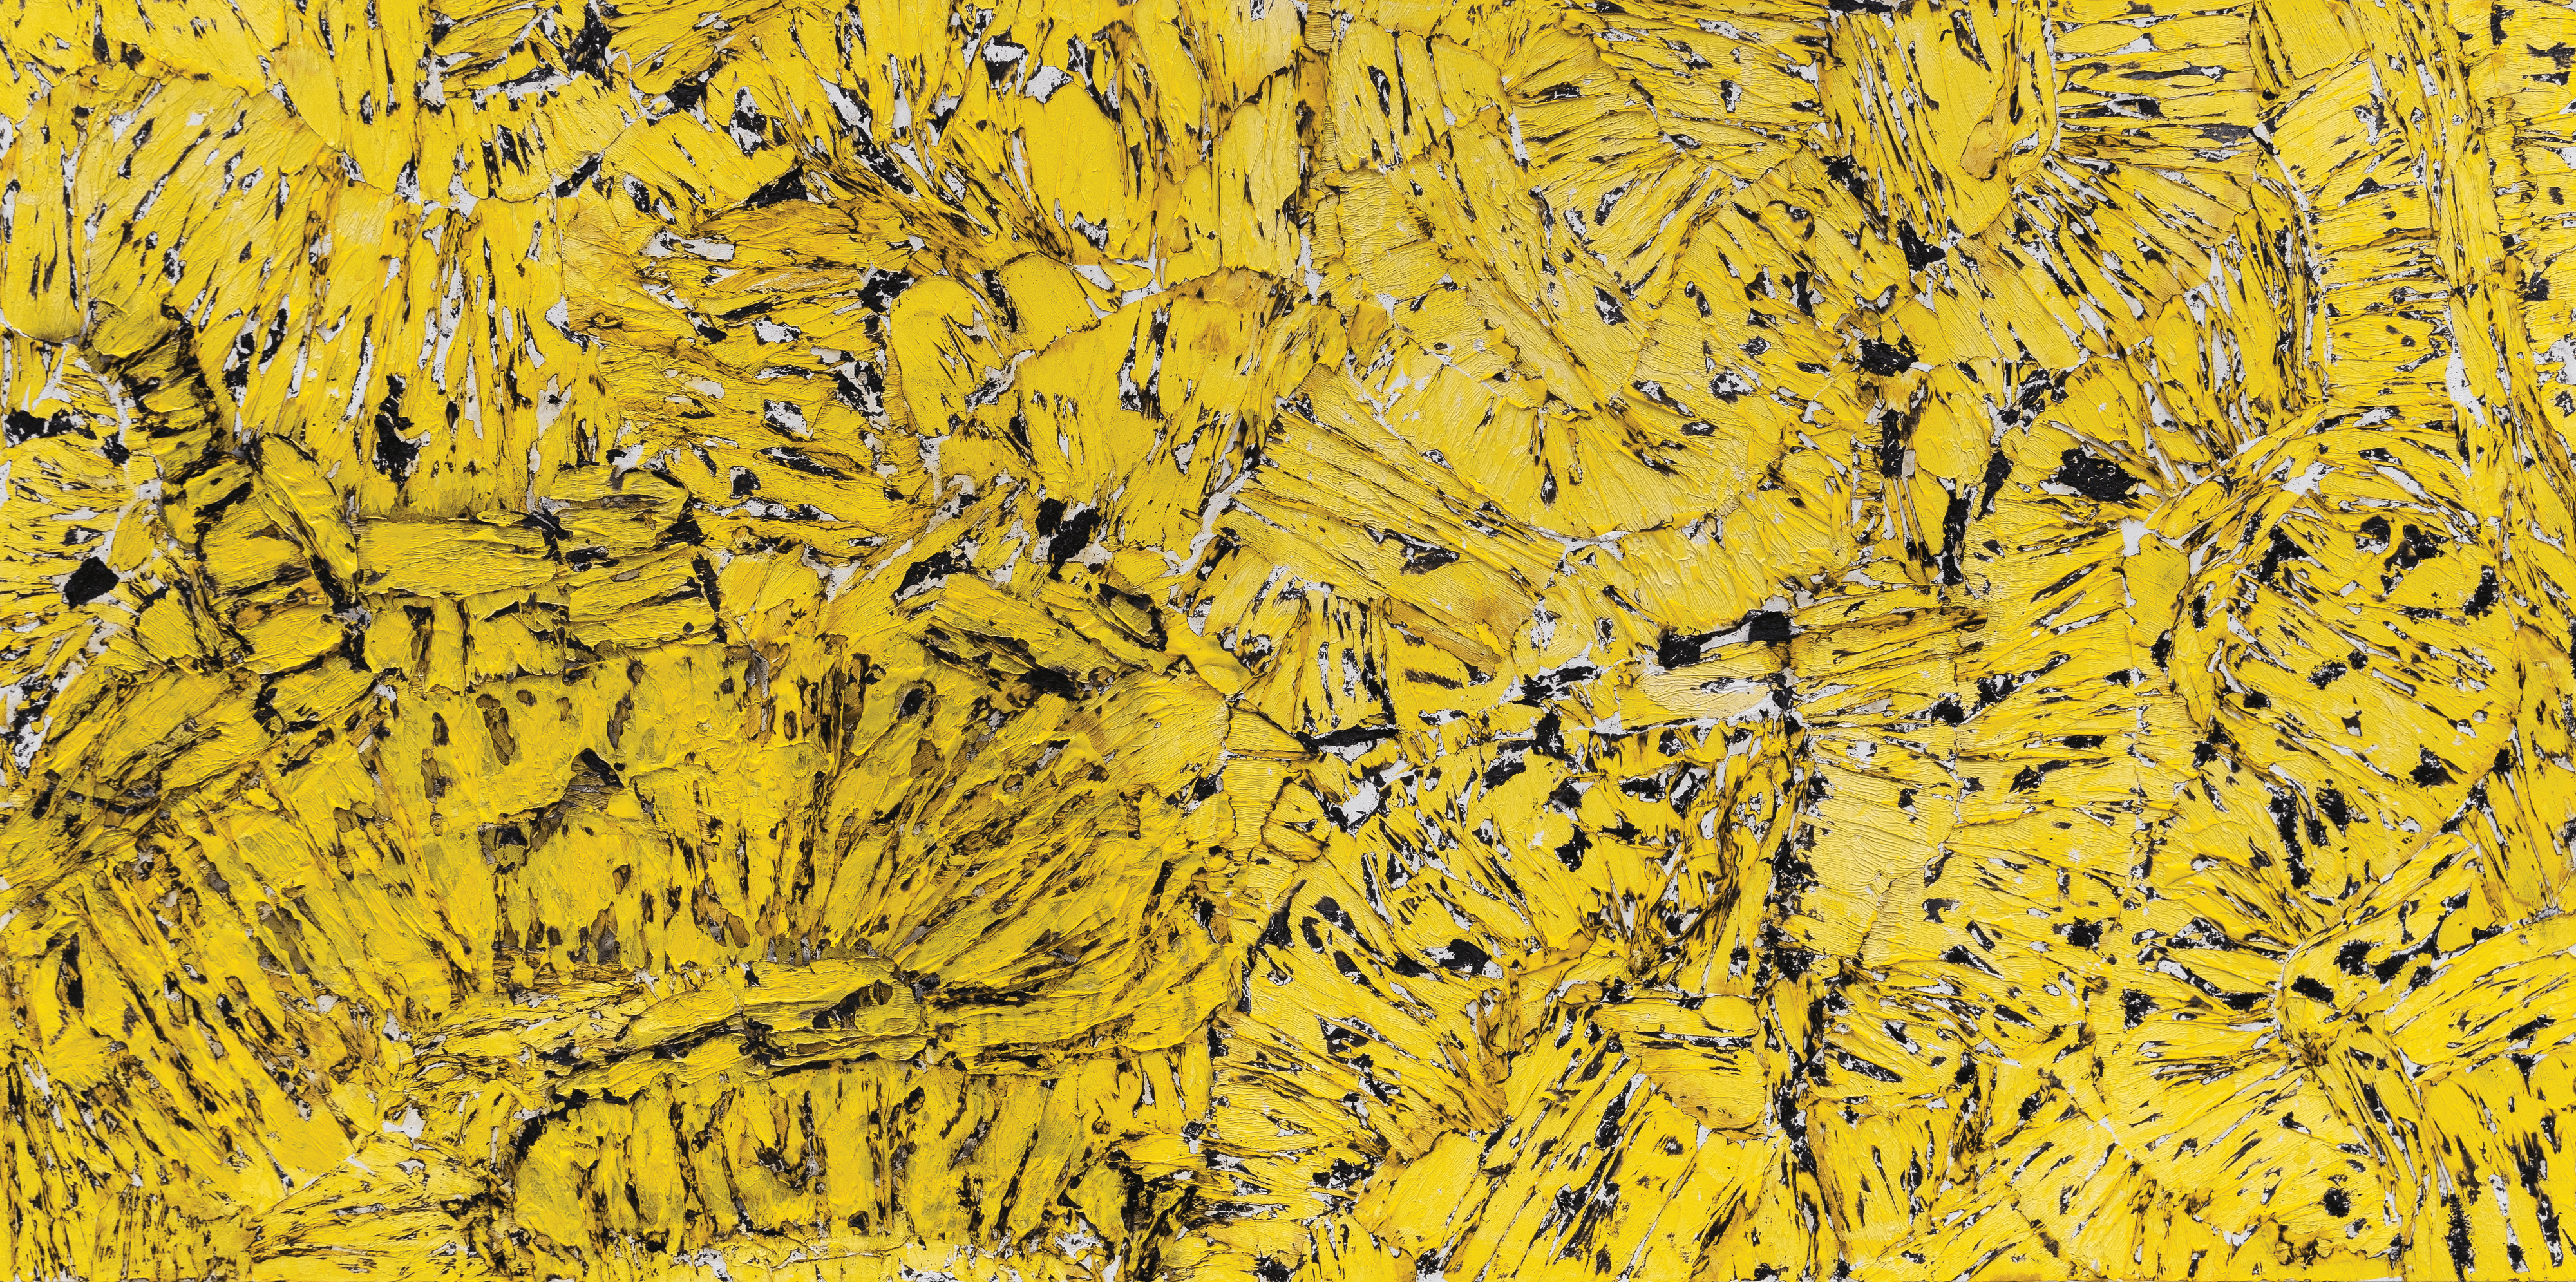 Yellow ART CAR by Jean BOGHOSSIAN